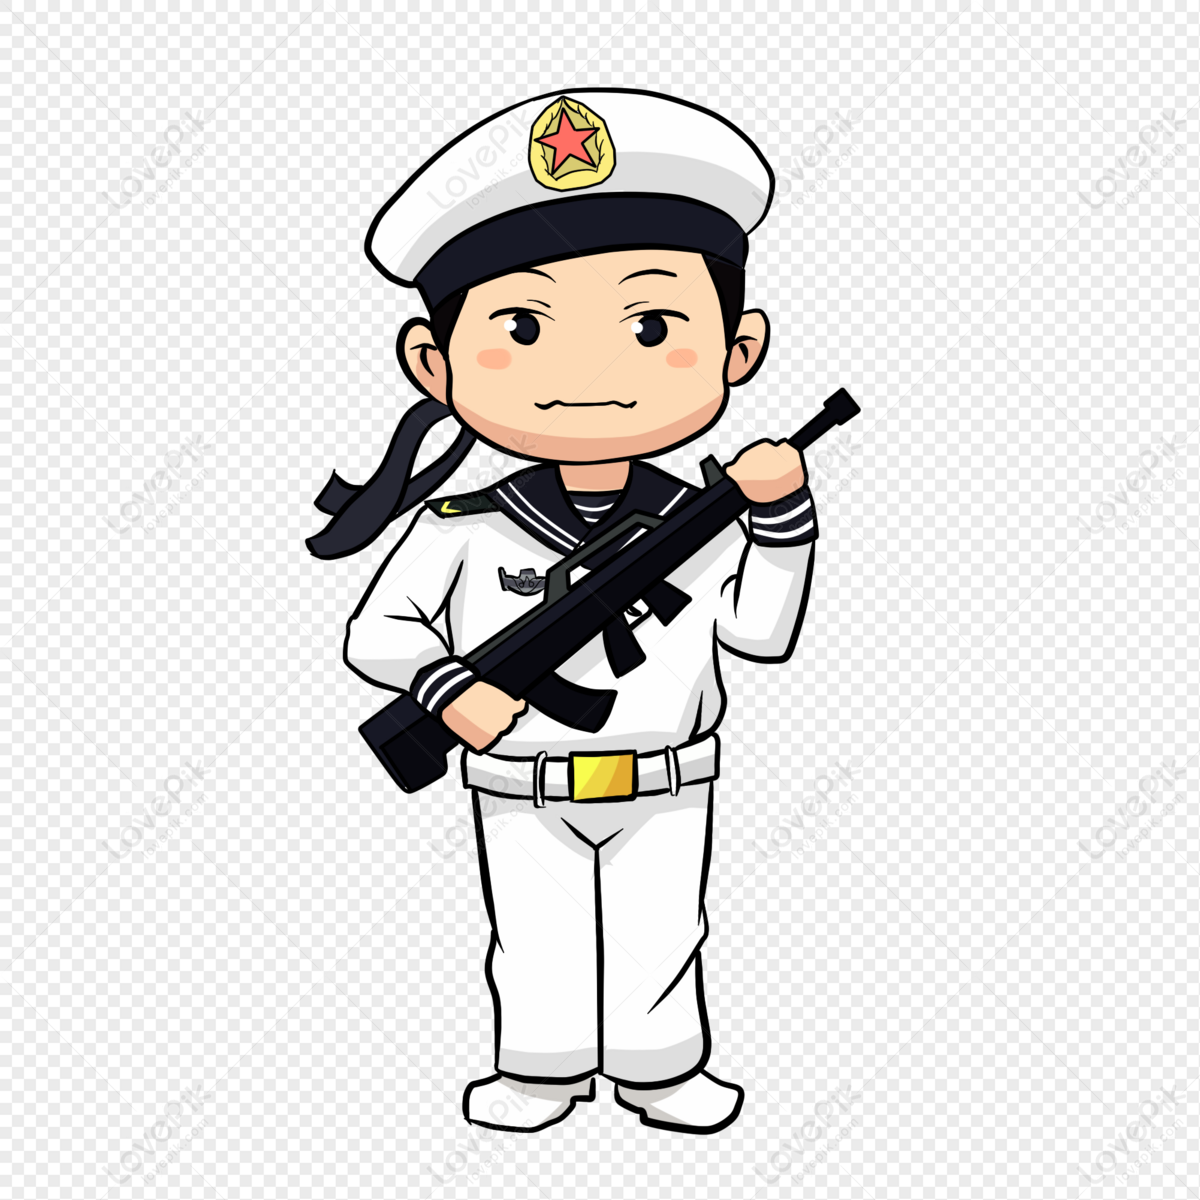 Hải quân Trung Quốc PNG: Hải quân Trung Quốc với nhiều tàu chiến hiện đại và công nghệ tiên tiến đang phát triển mạnh mẽ để bảo vệ chủ quyền biển đảo và các lợi ích quốc gia. Hình ảnh PNG rõ nét của các chiến hạm sẽ cho bạn cái nhìn toàn diện về sức mạnh và đội ngũ chiến sỹ dũng cảm của đất nước hùng mạnh Trung Hoa.